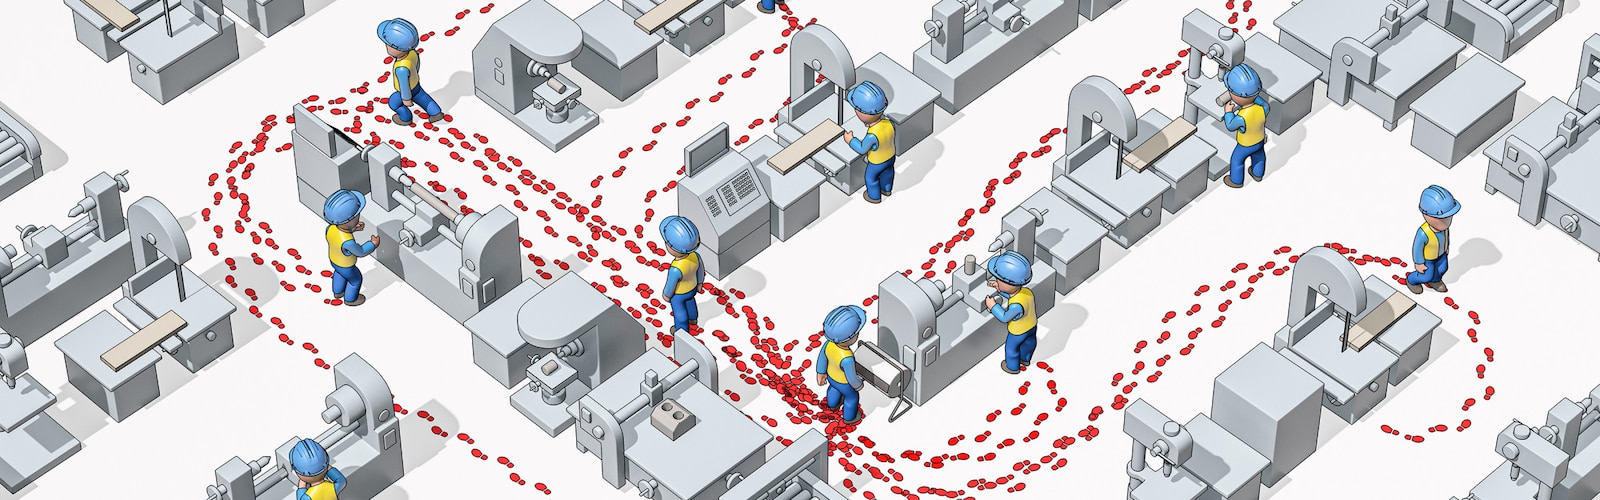 Imagen desde arriba de trabajadores con cascos de seguridad en un entorno industrial donde se ven sus huellas, que ilustran sus movimientos.